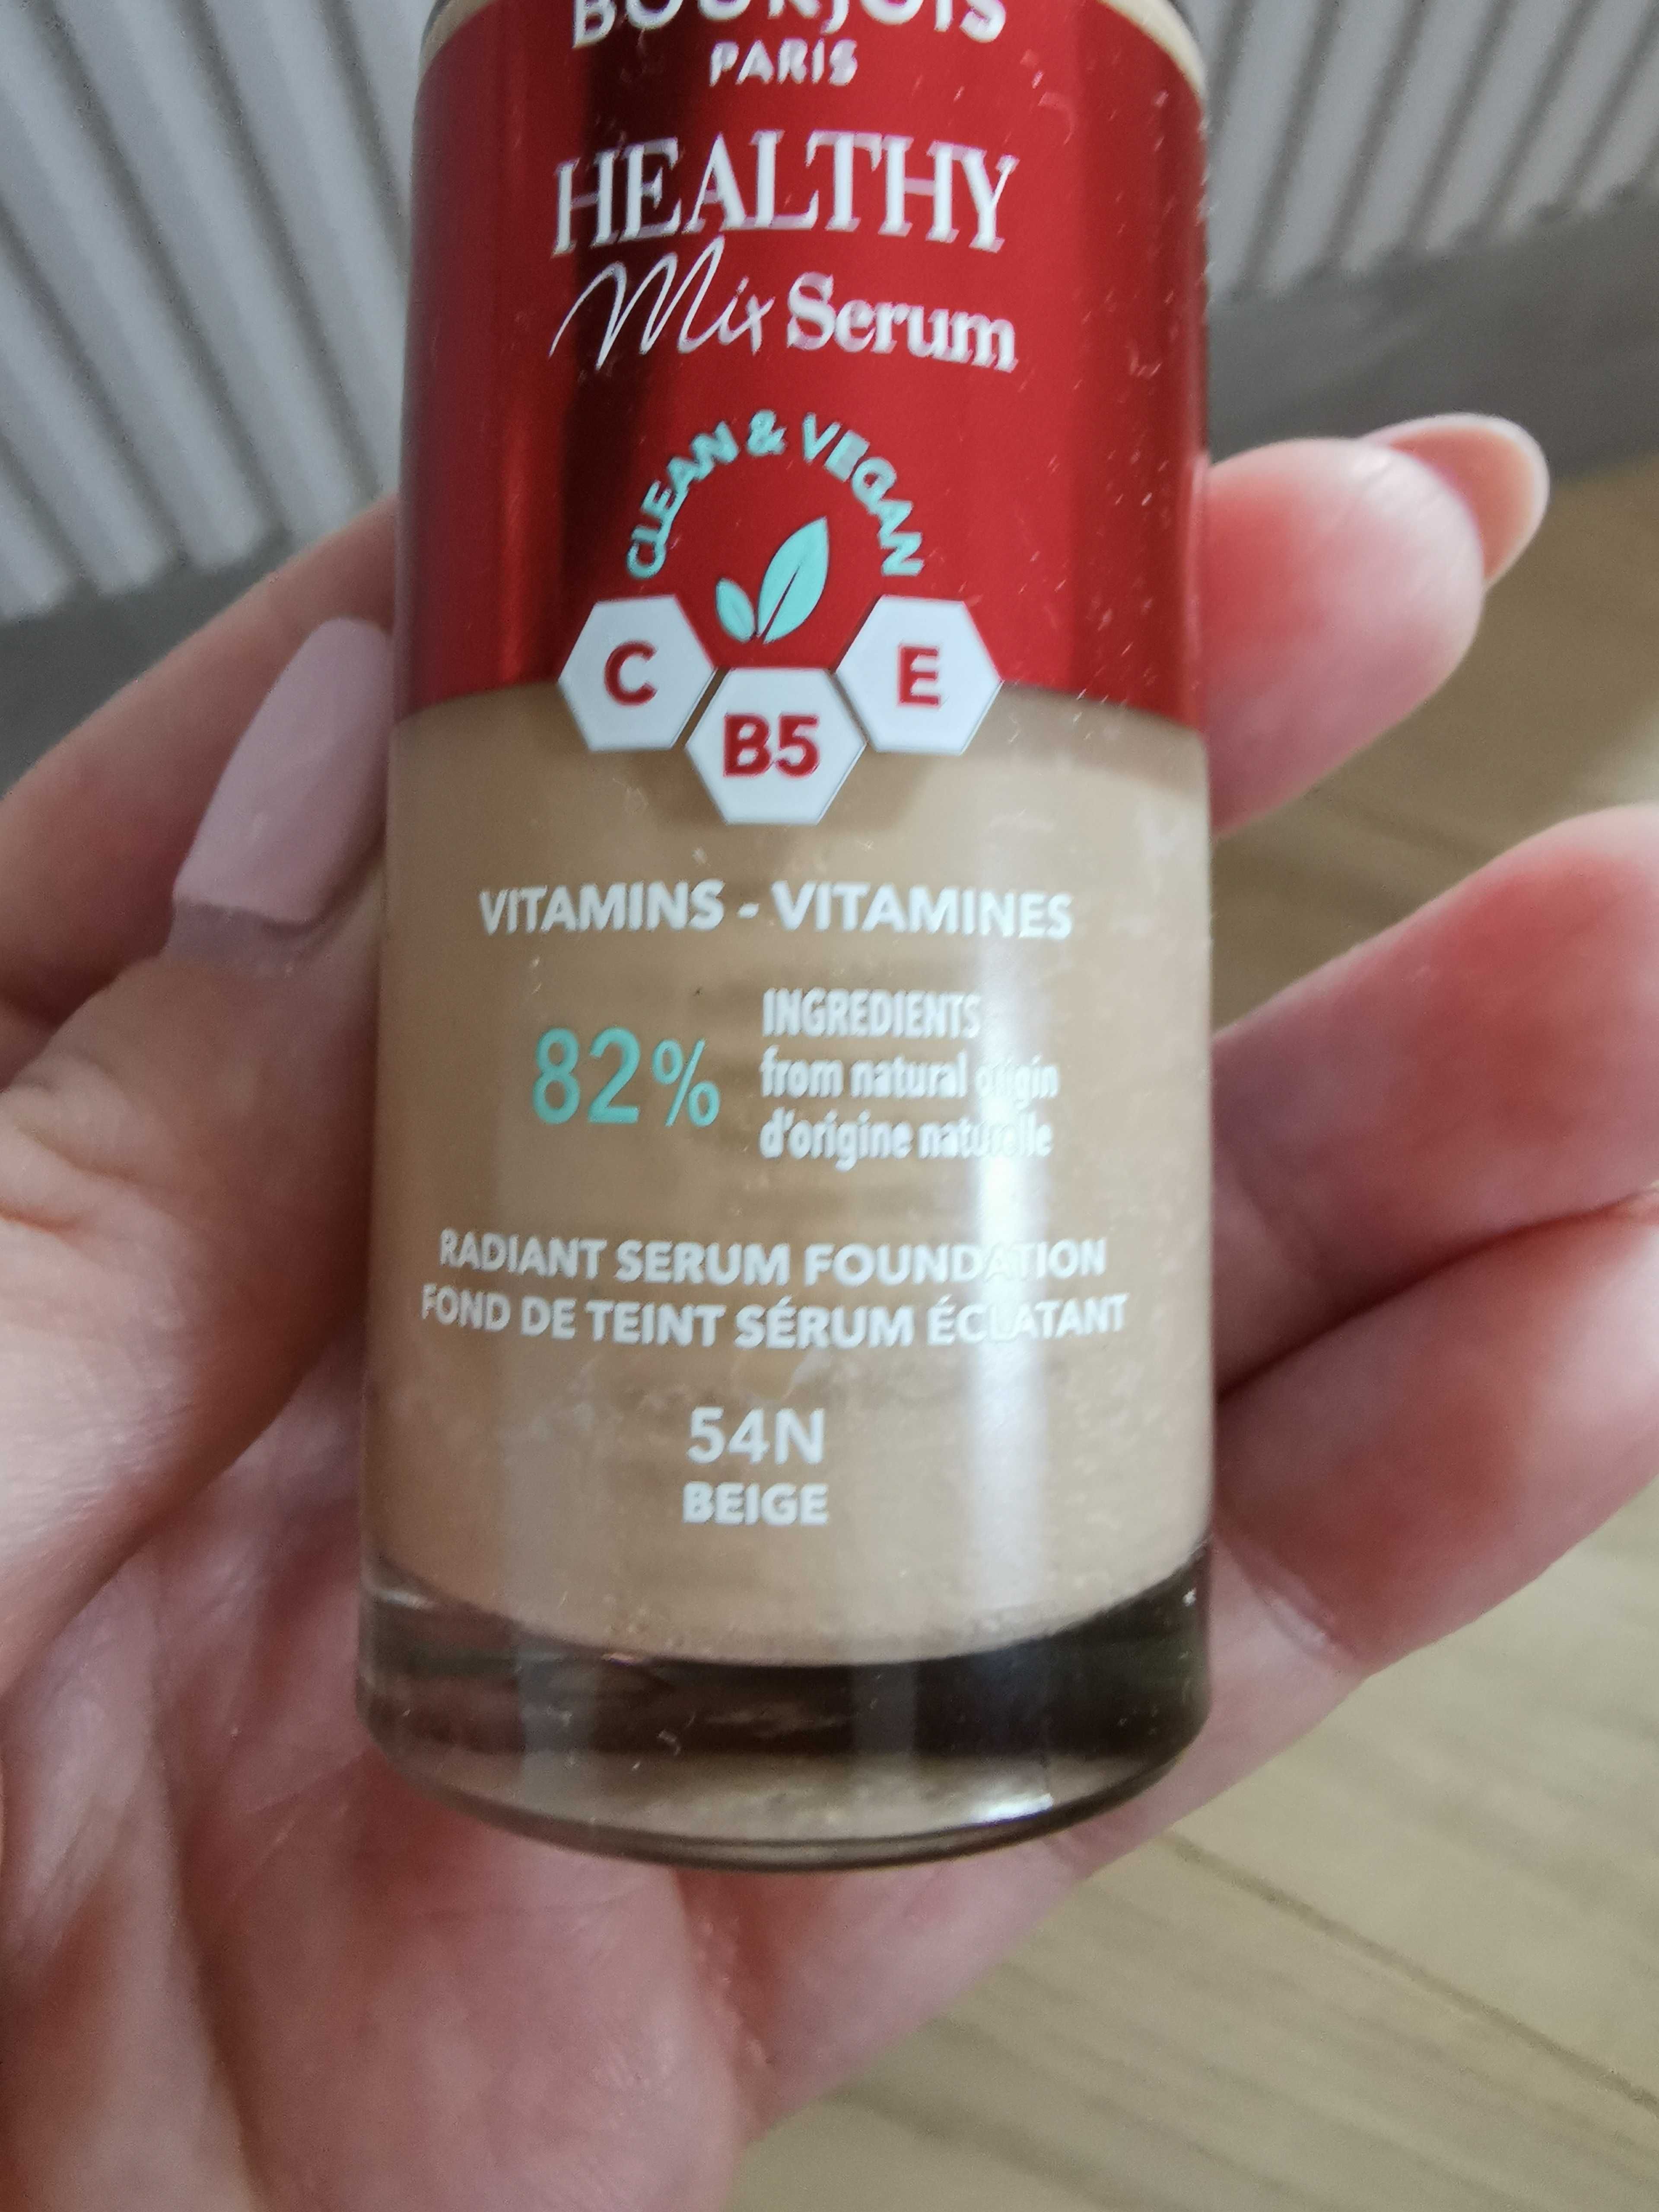 Podkład witaminowy Bourjois Mix Serum 54N beige